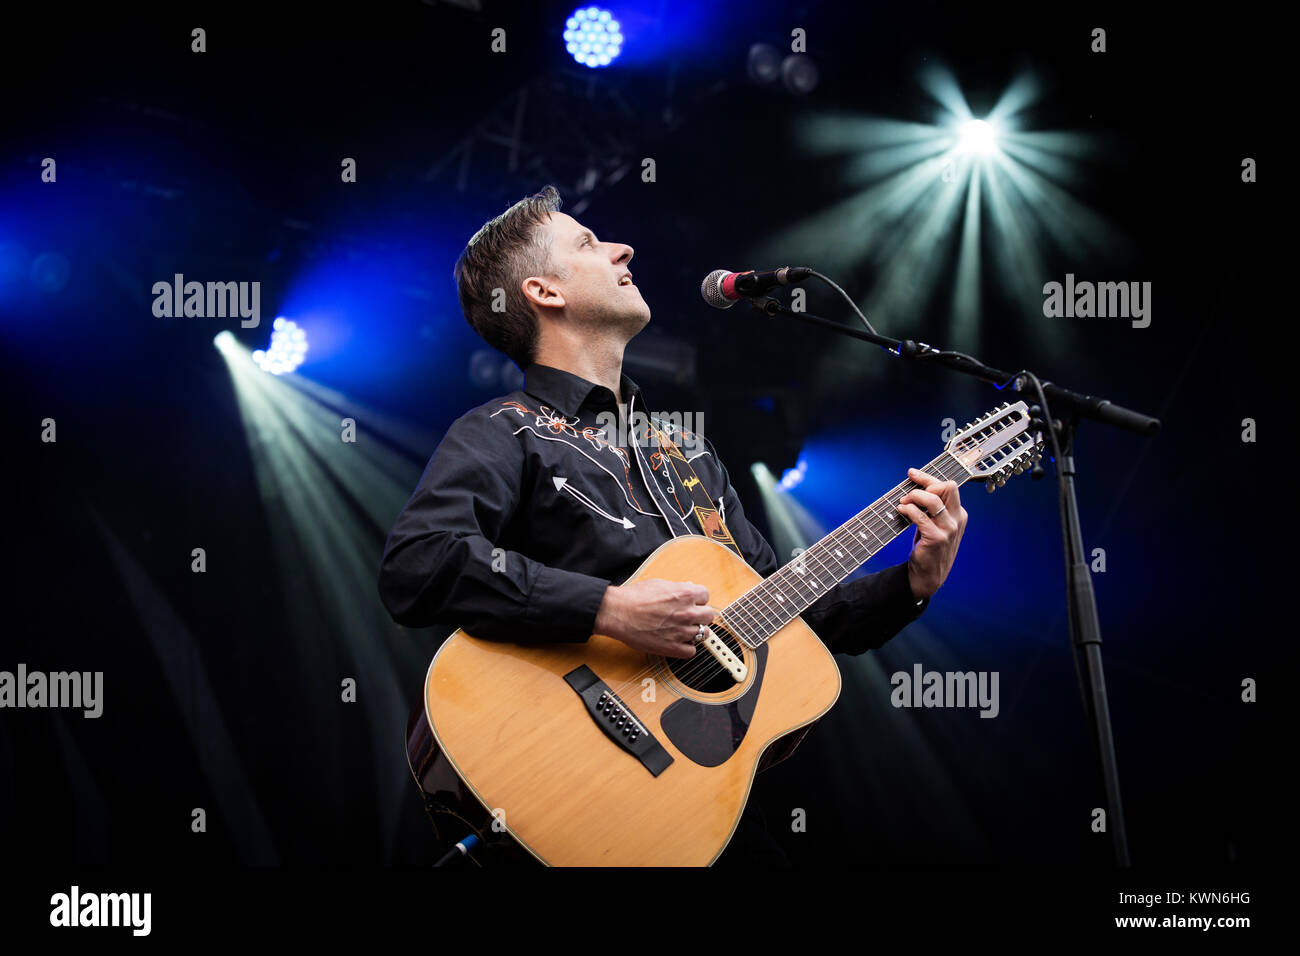 Le groupe américain Calexico effectue un concert live au Danish Music Festival 2015 Northside à Aarhus. Chanteur et musicien ici Joey Burns est représenté sur scène. Le Danemark, 14/06 2015. Banque D'Images